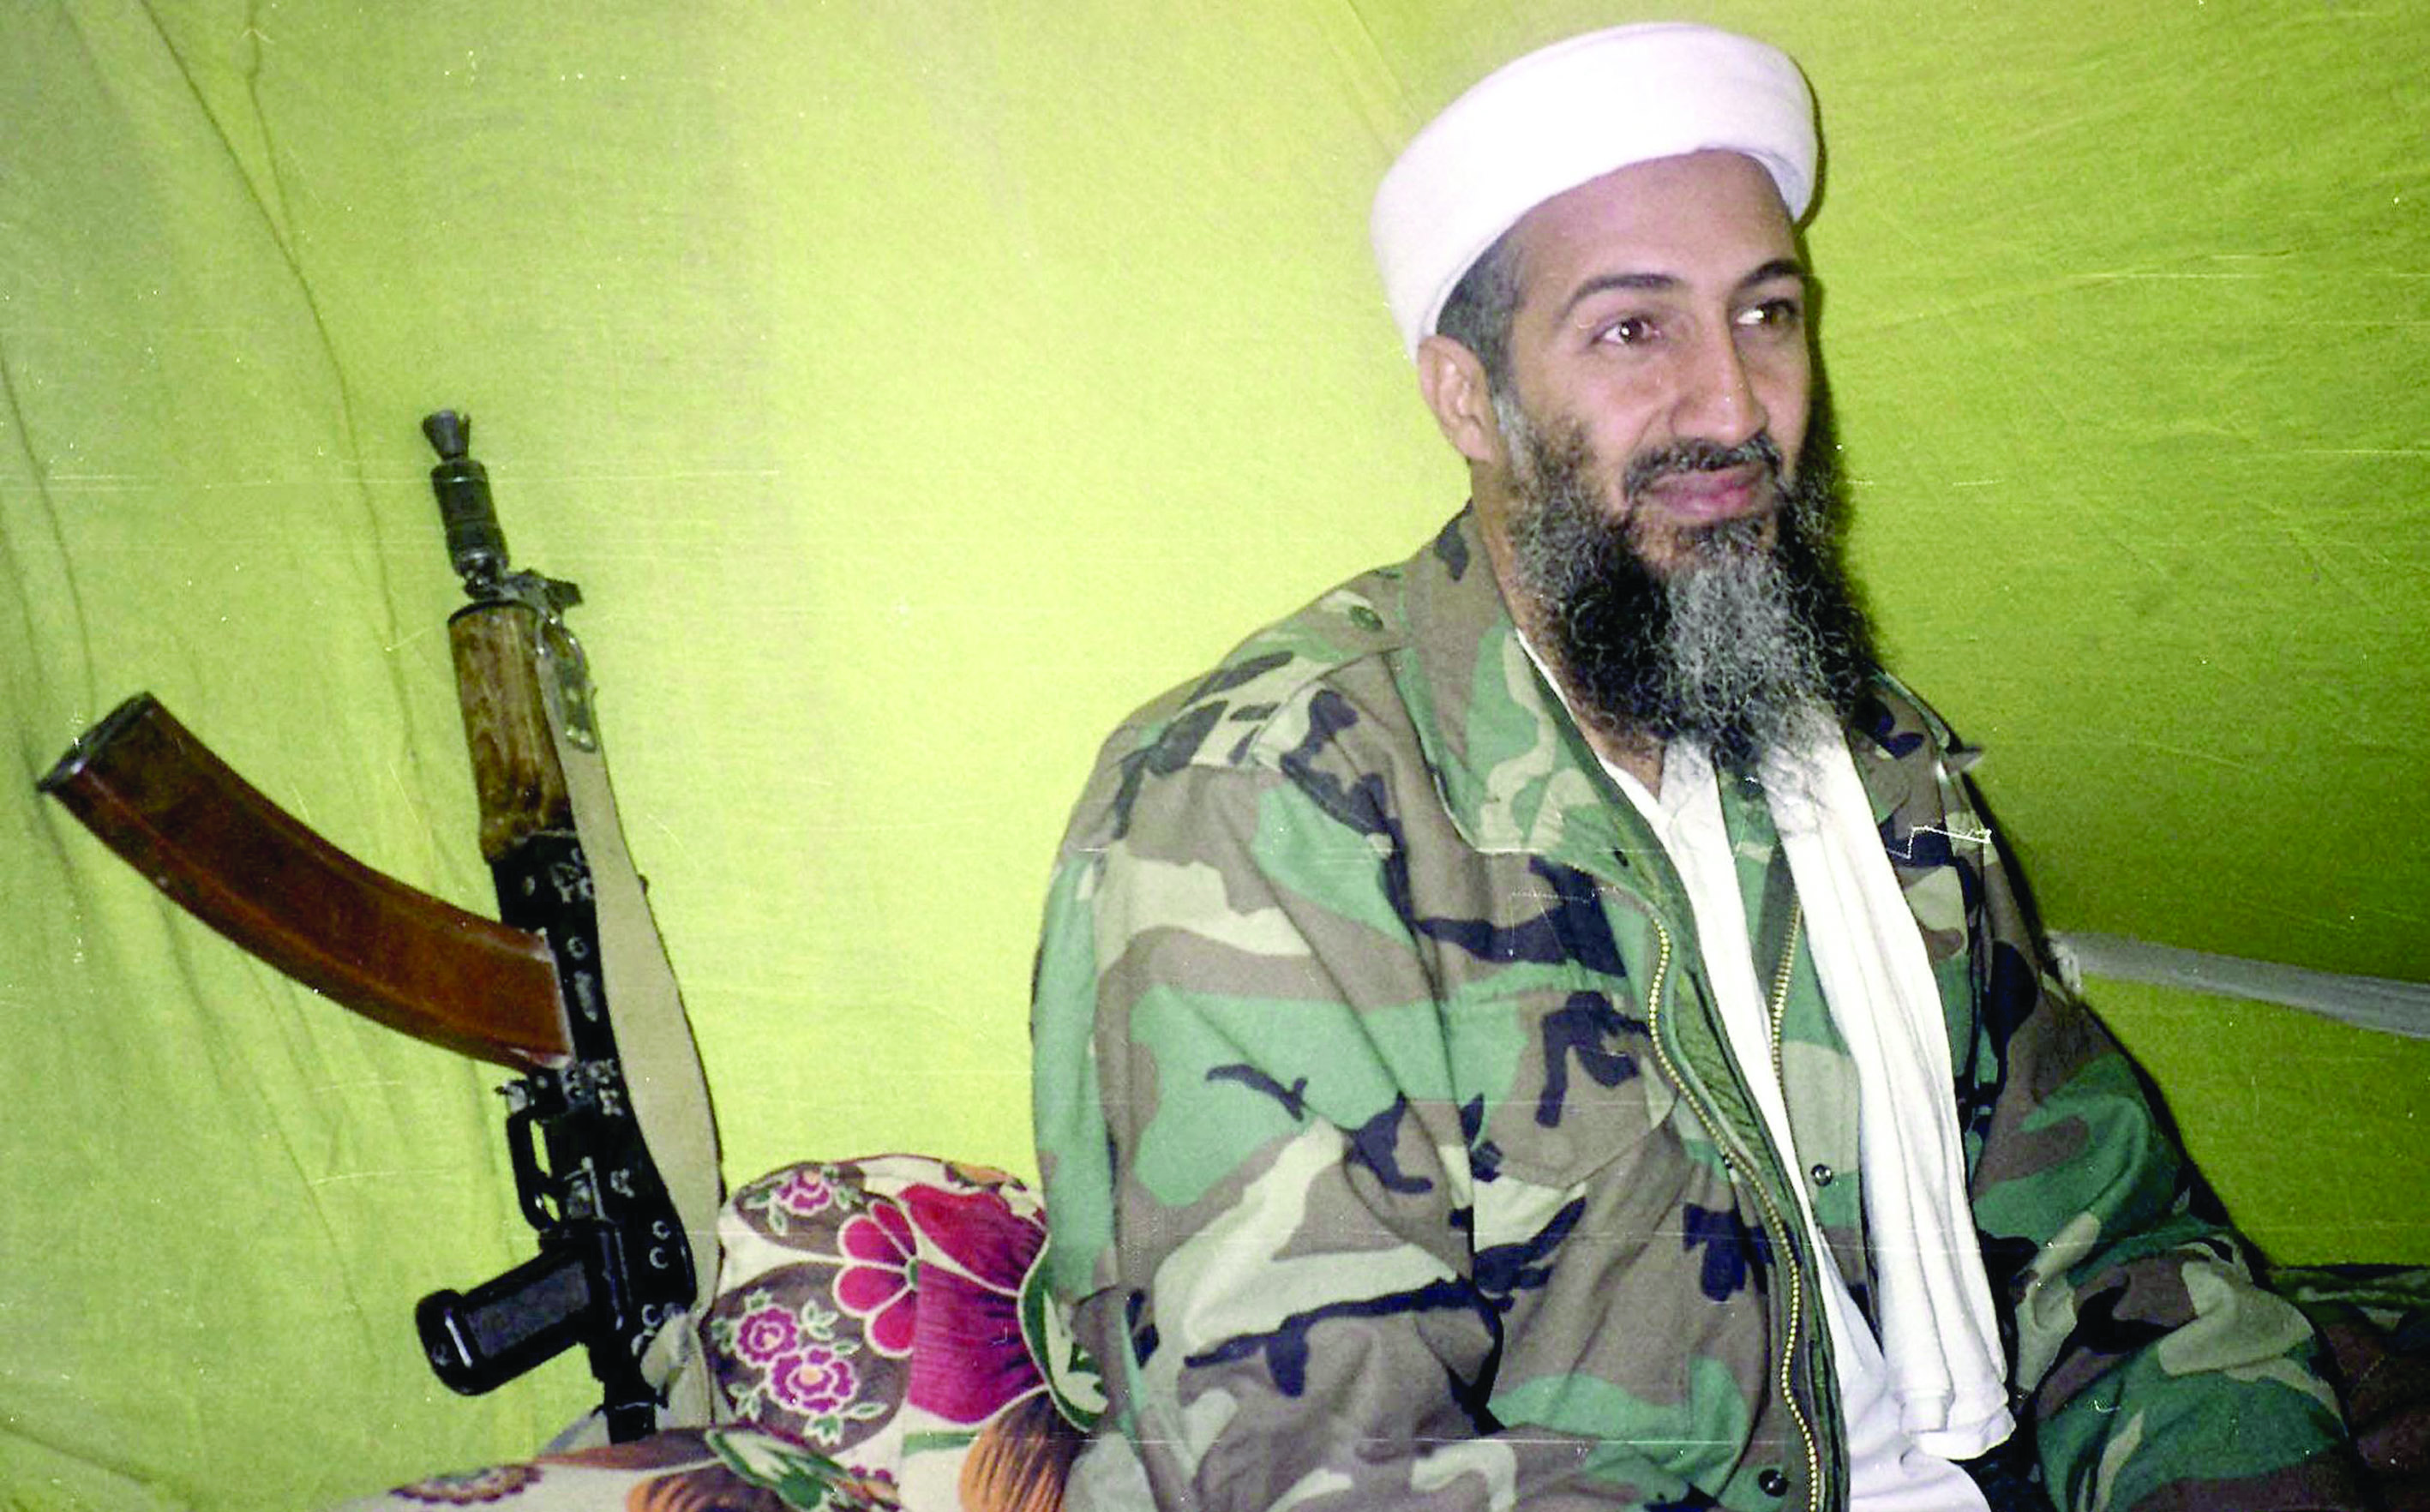 مقتل بن لادن قبل خمس سنوات كان نقطة تحول في الحرب على الارهاب